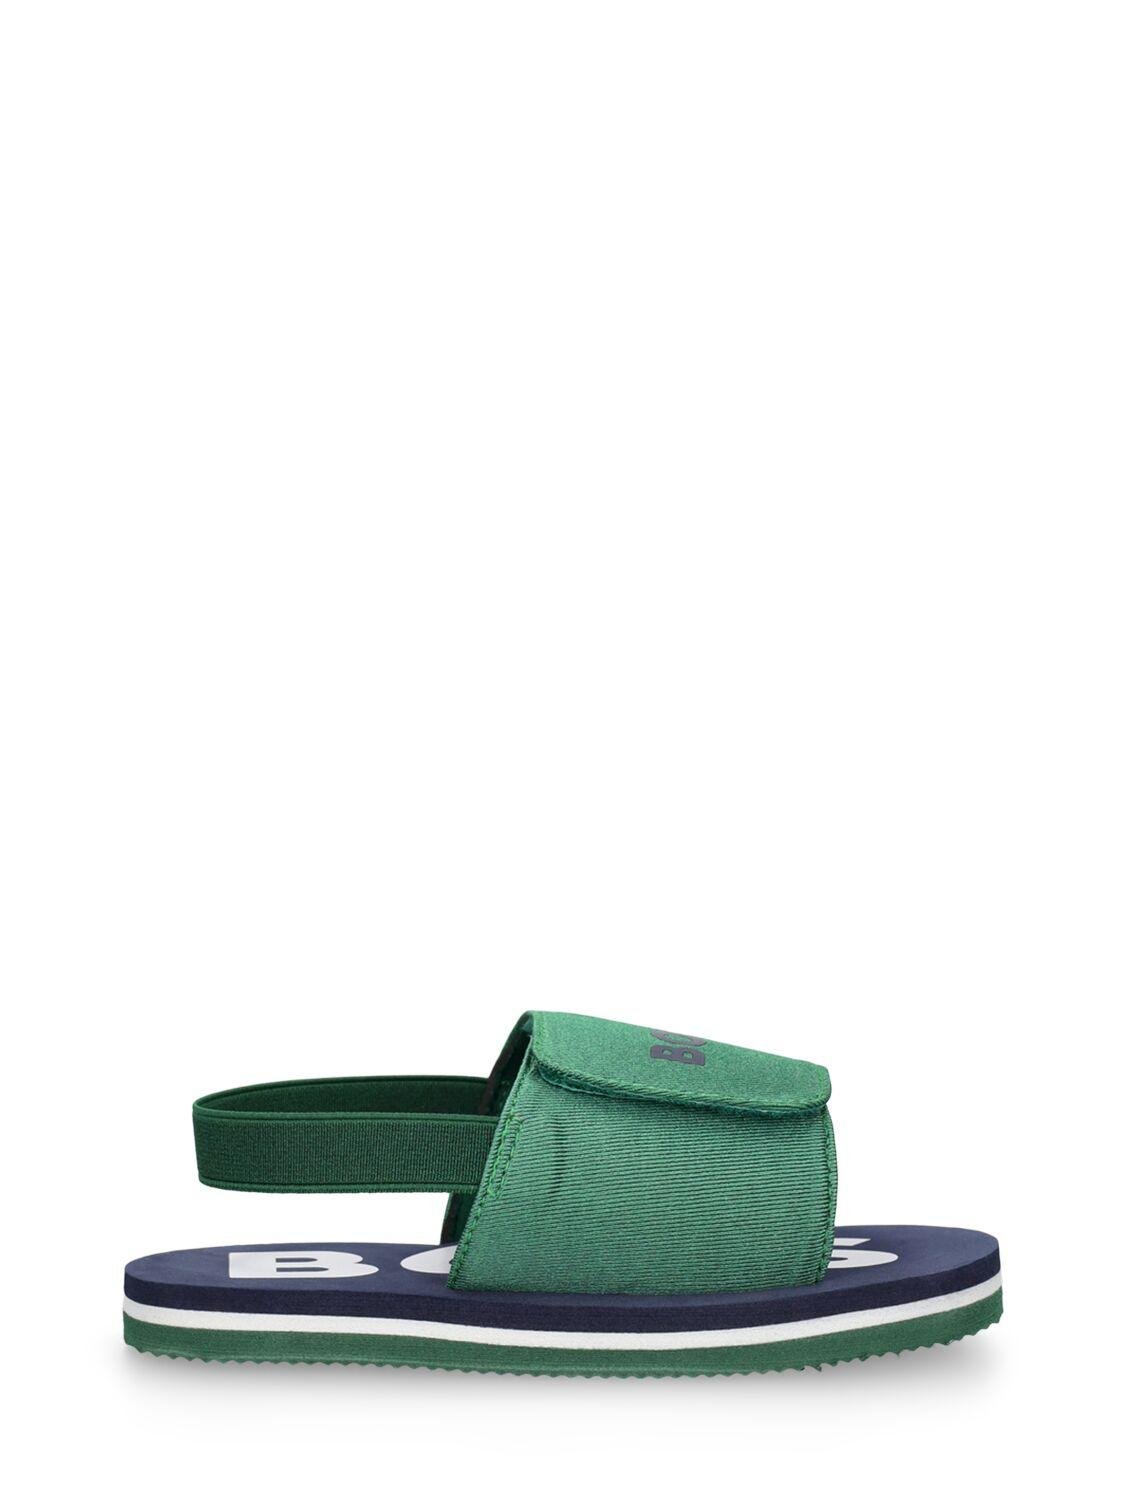 Elastic Strap Sandals W/ Logo by HUGO BOSS